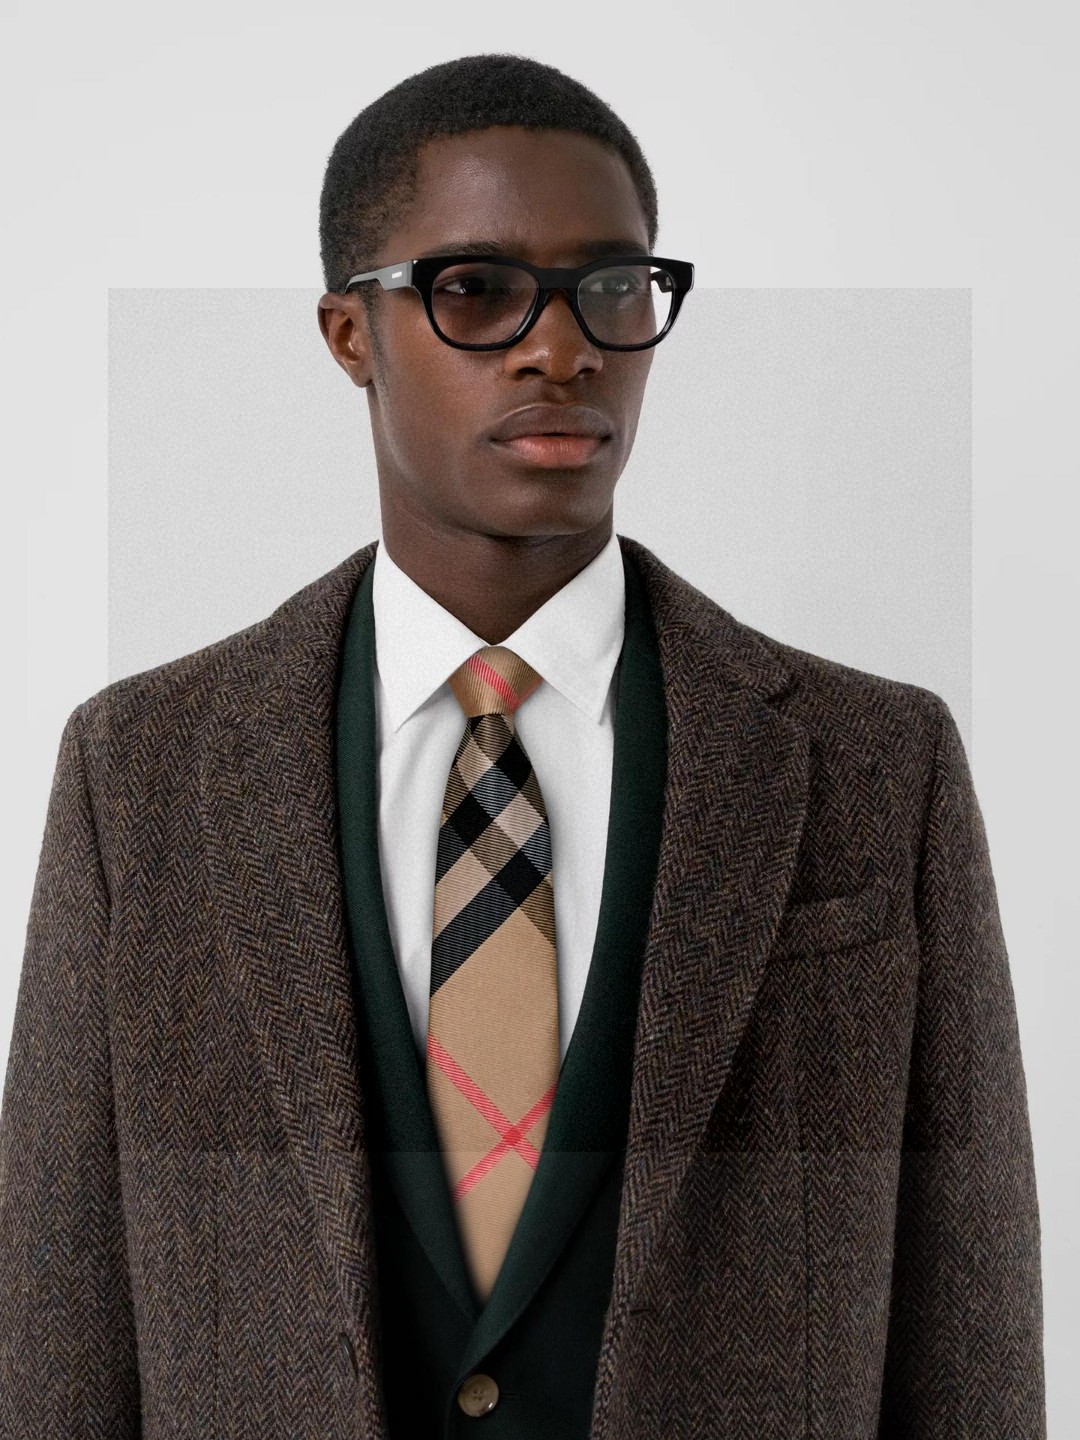 B家专柜同步特批男士格纹提花领带稀有展现精湛手工与时尚优雅的理想选择这款采用B家最具标志性的Vintag